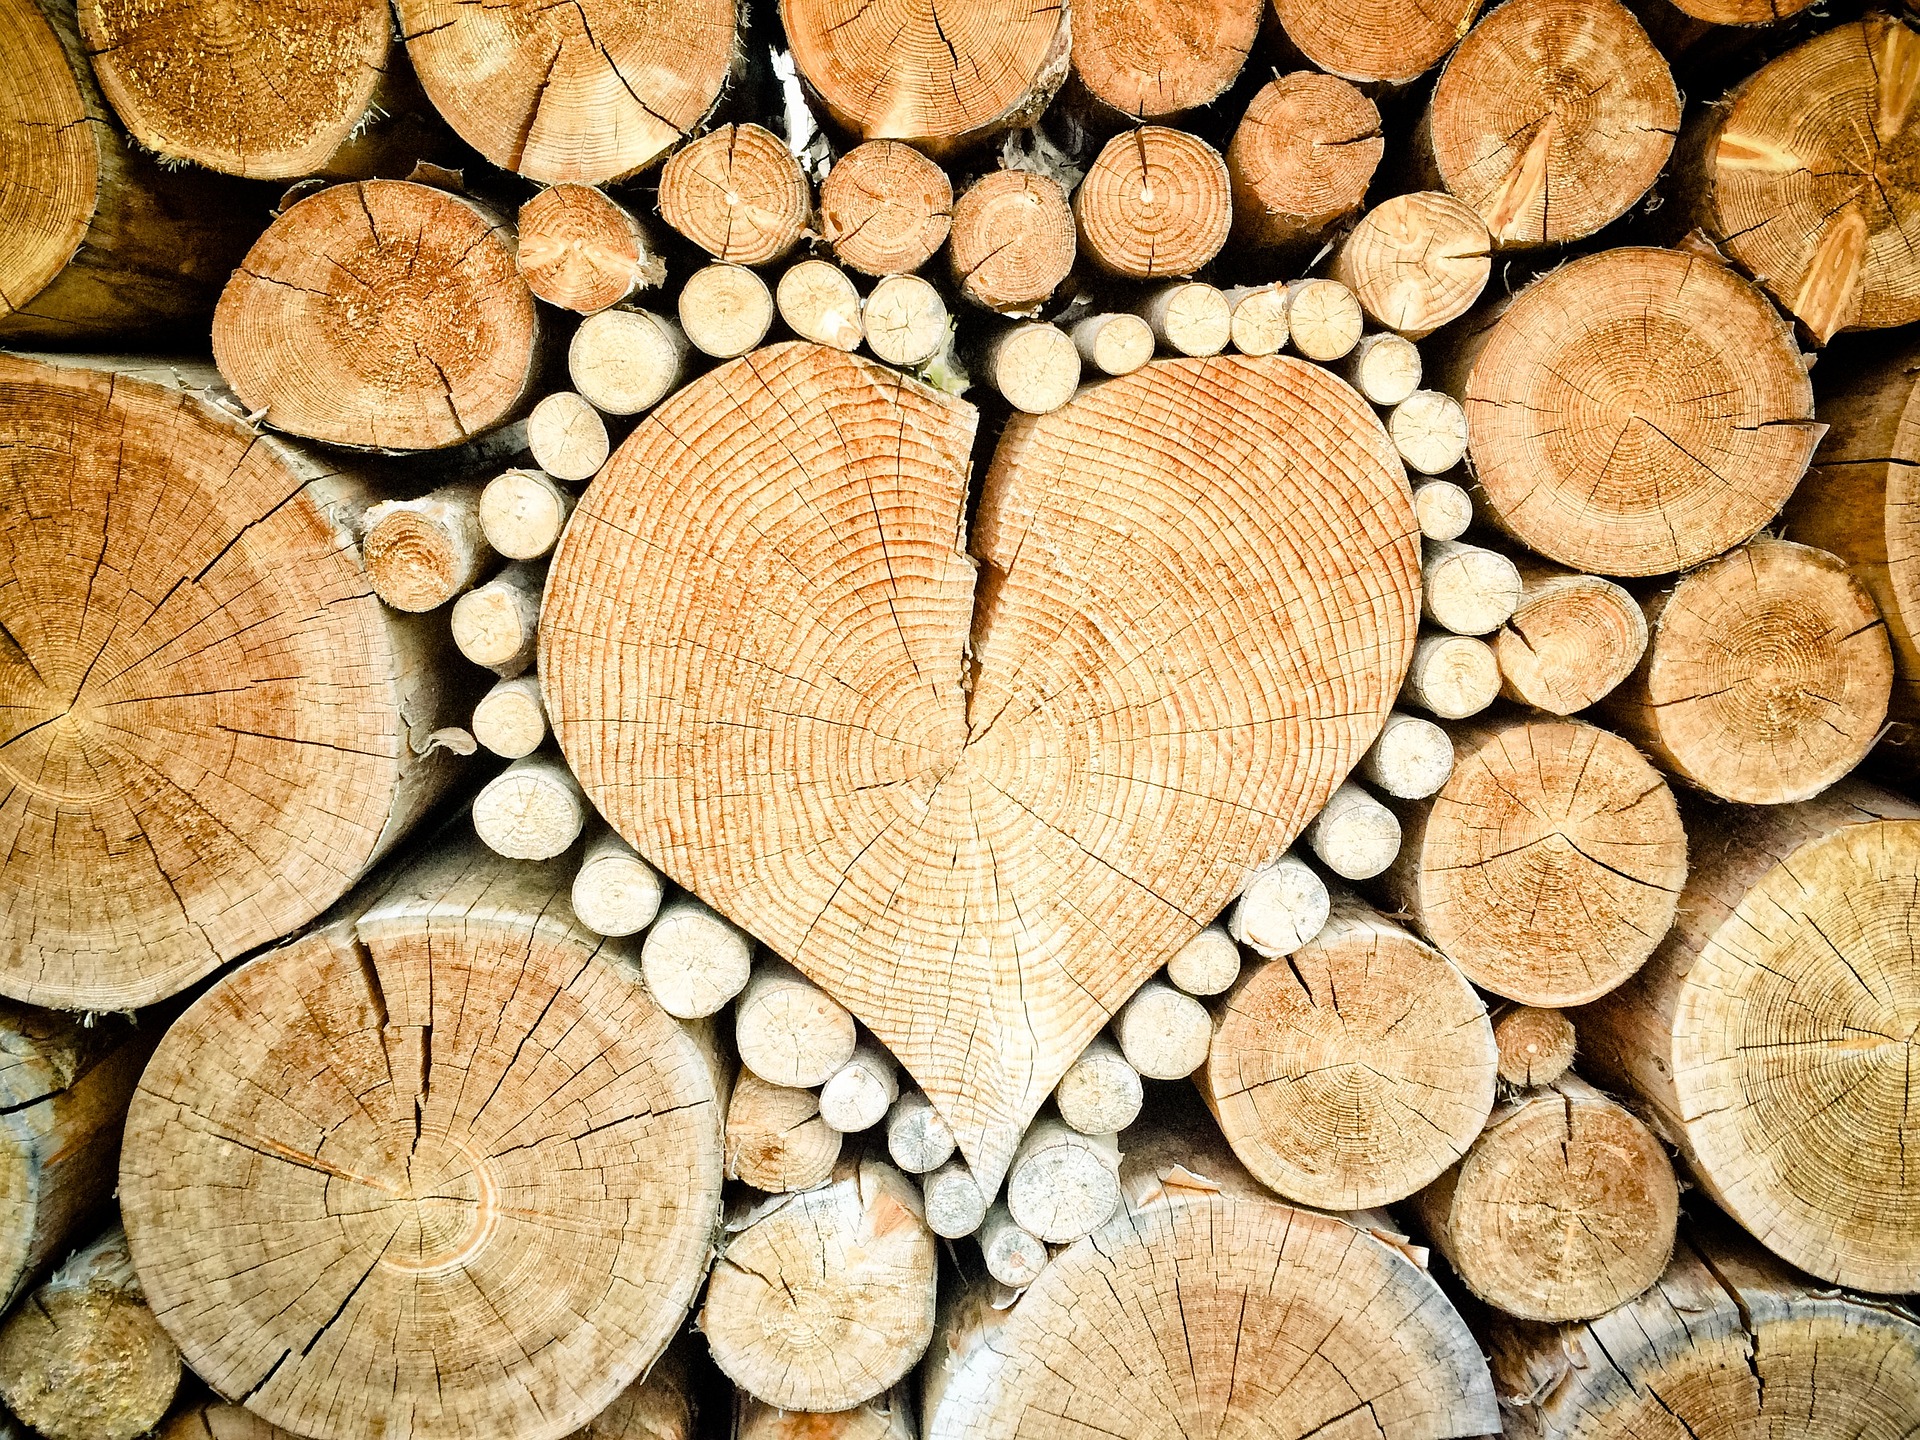 Baumpflege, Gartenbau, Landschaftsbau, Astschnitt, Baumschnitt, Baumpflege, Entsorgung, Zum Stapel geschichtete Holzstämme, in der Mitte ist ein Herz geformt.